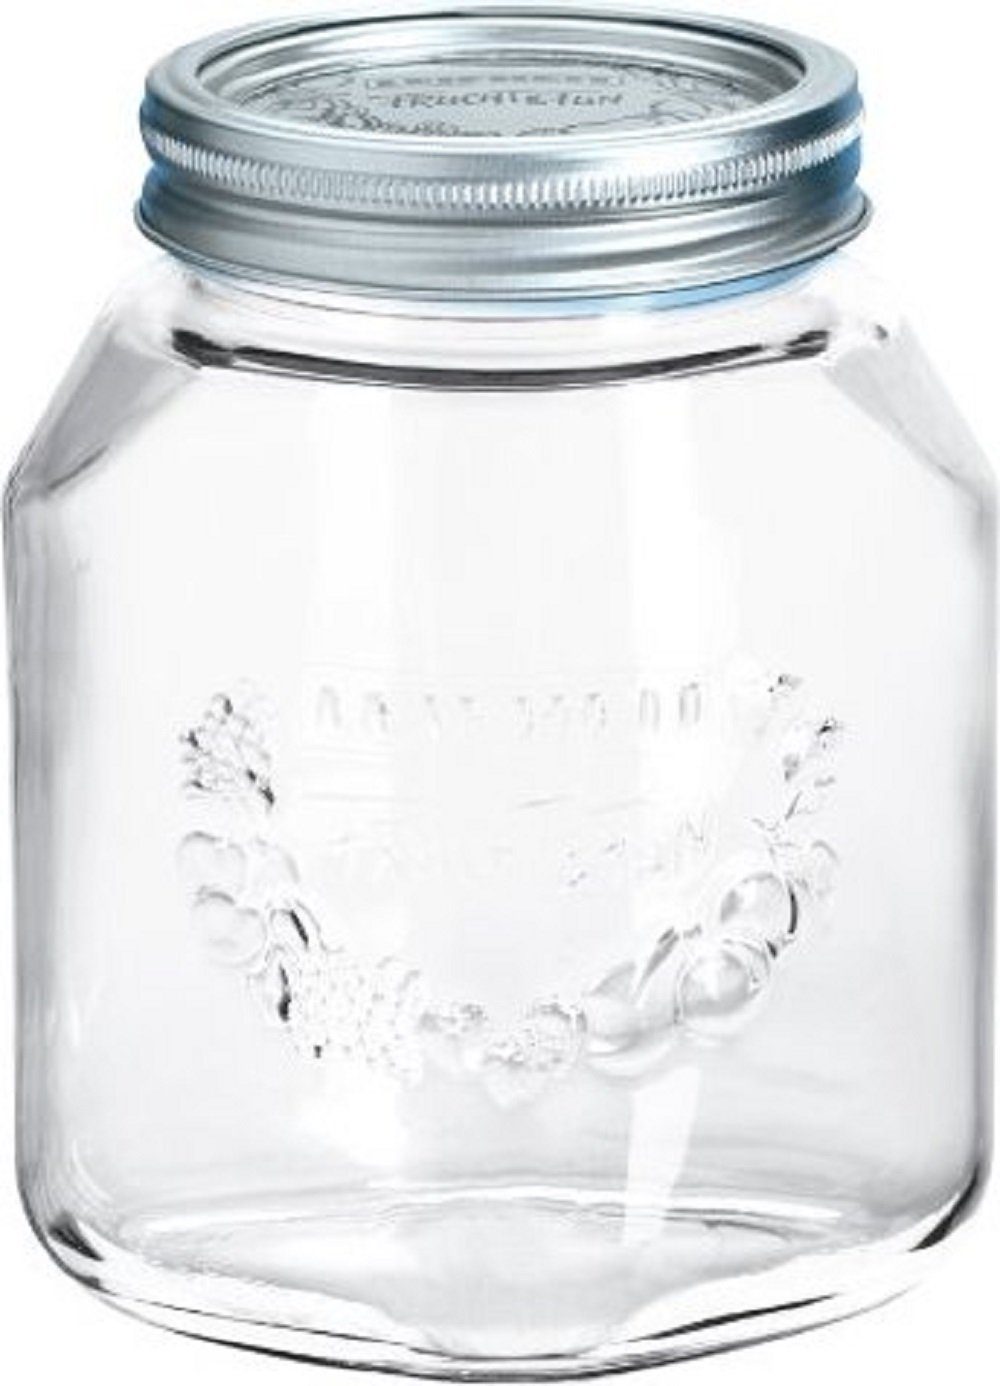 Leifheit Einmachglas »6 Stück Leifheit Einkochglas (1,0L) mit Deckel und  Schraubring« online kaufen | OTTO